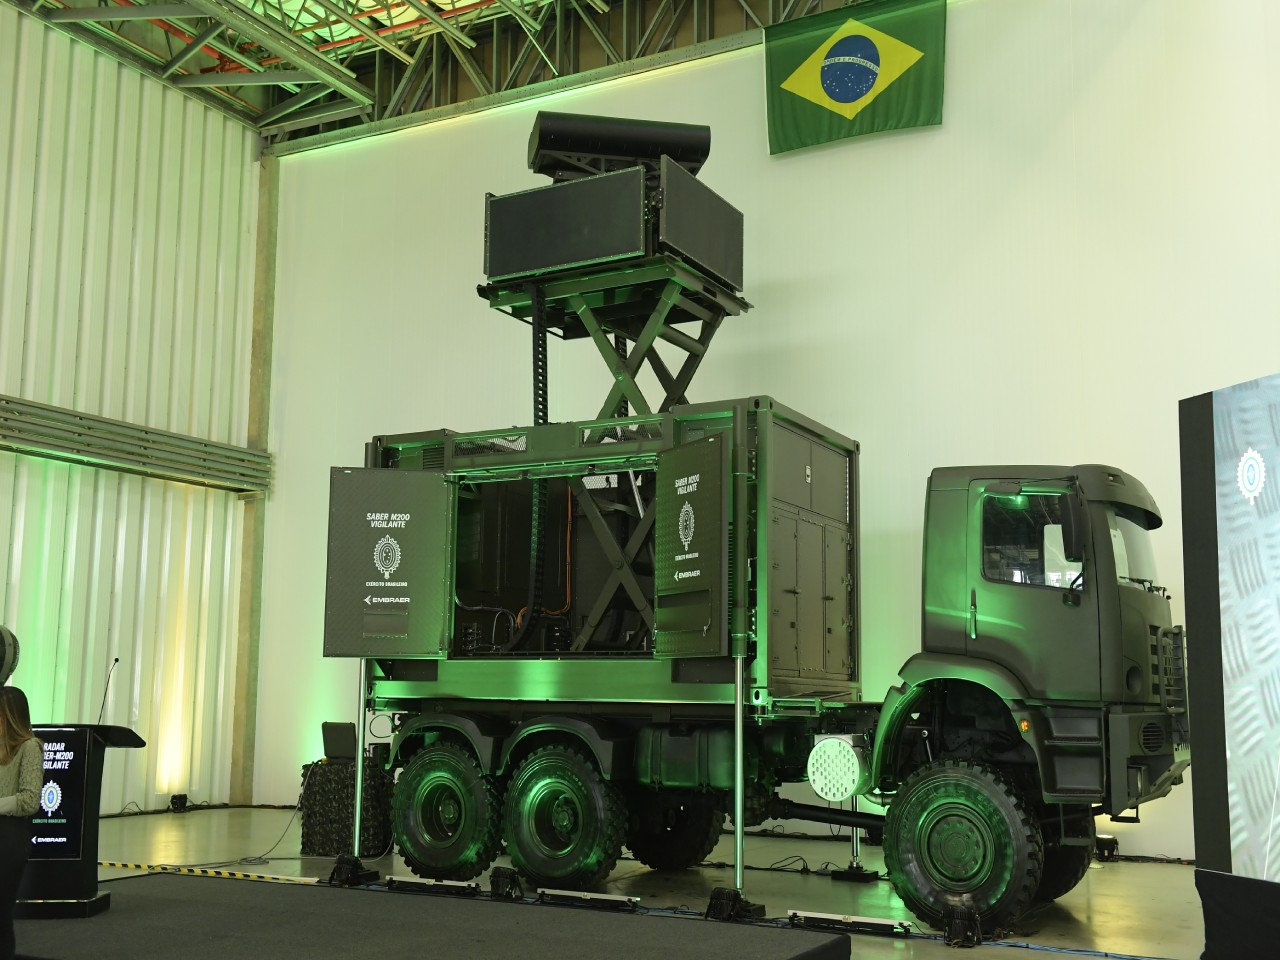 Ejército Brasileño y Embraer presentan radar de alerta aérea temprana